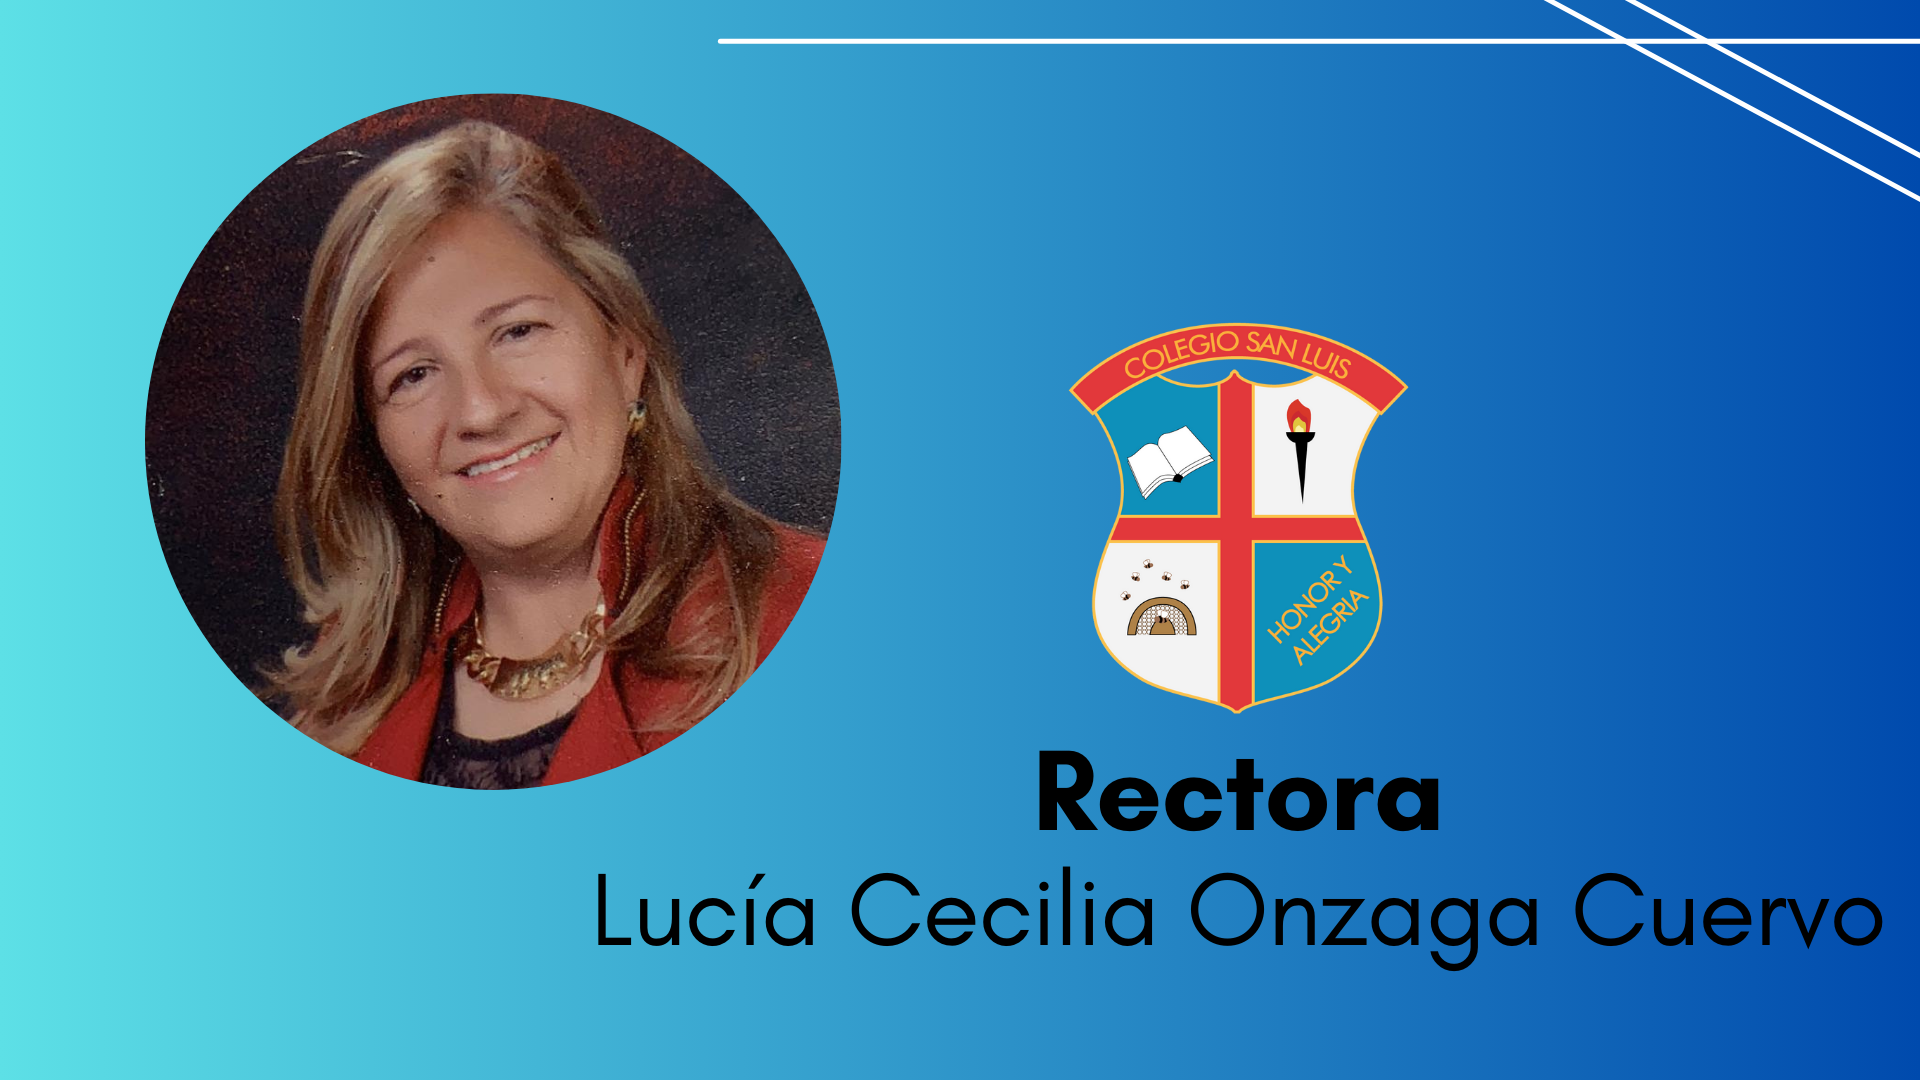 Lucía Cecilia Onzaga Cuervo